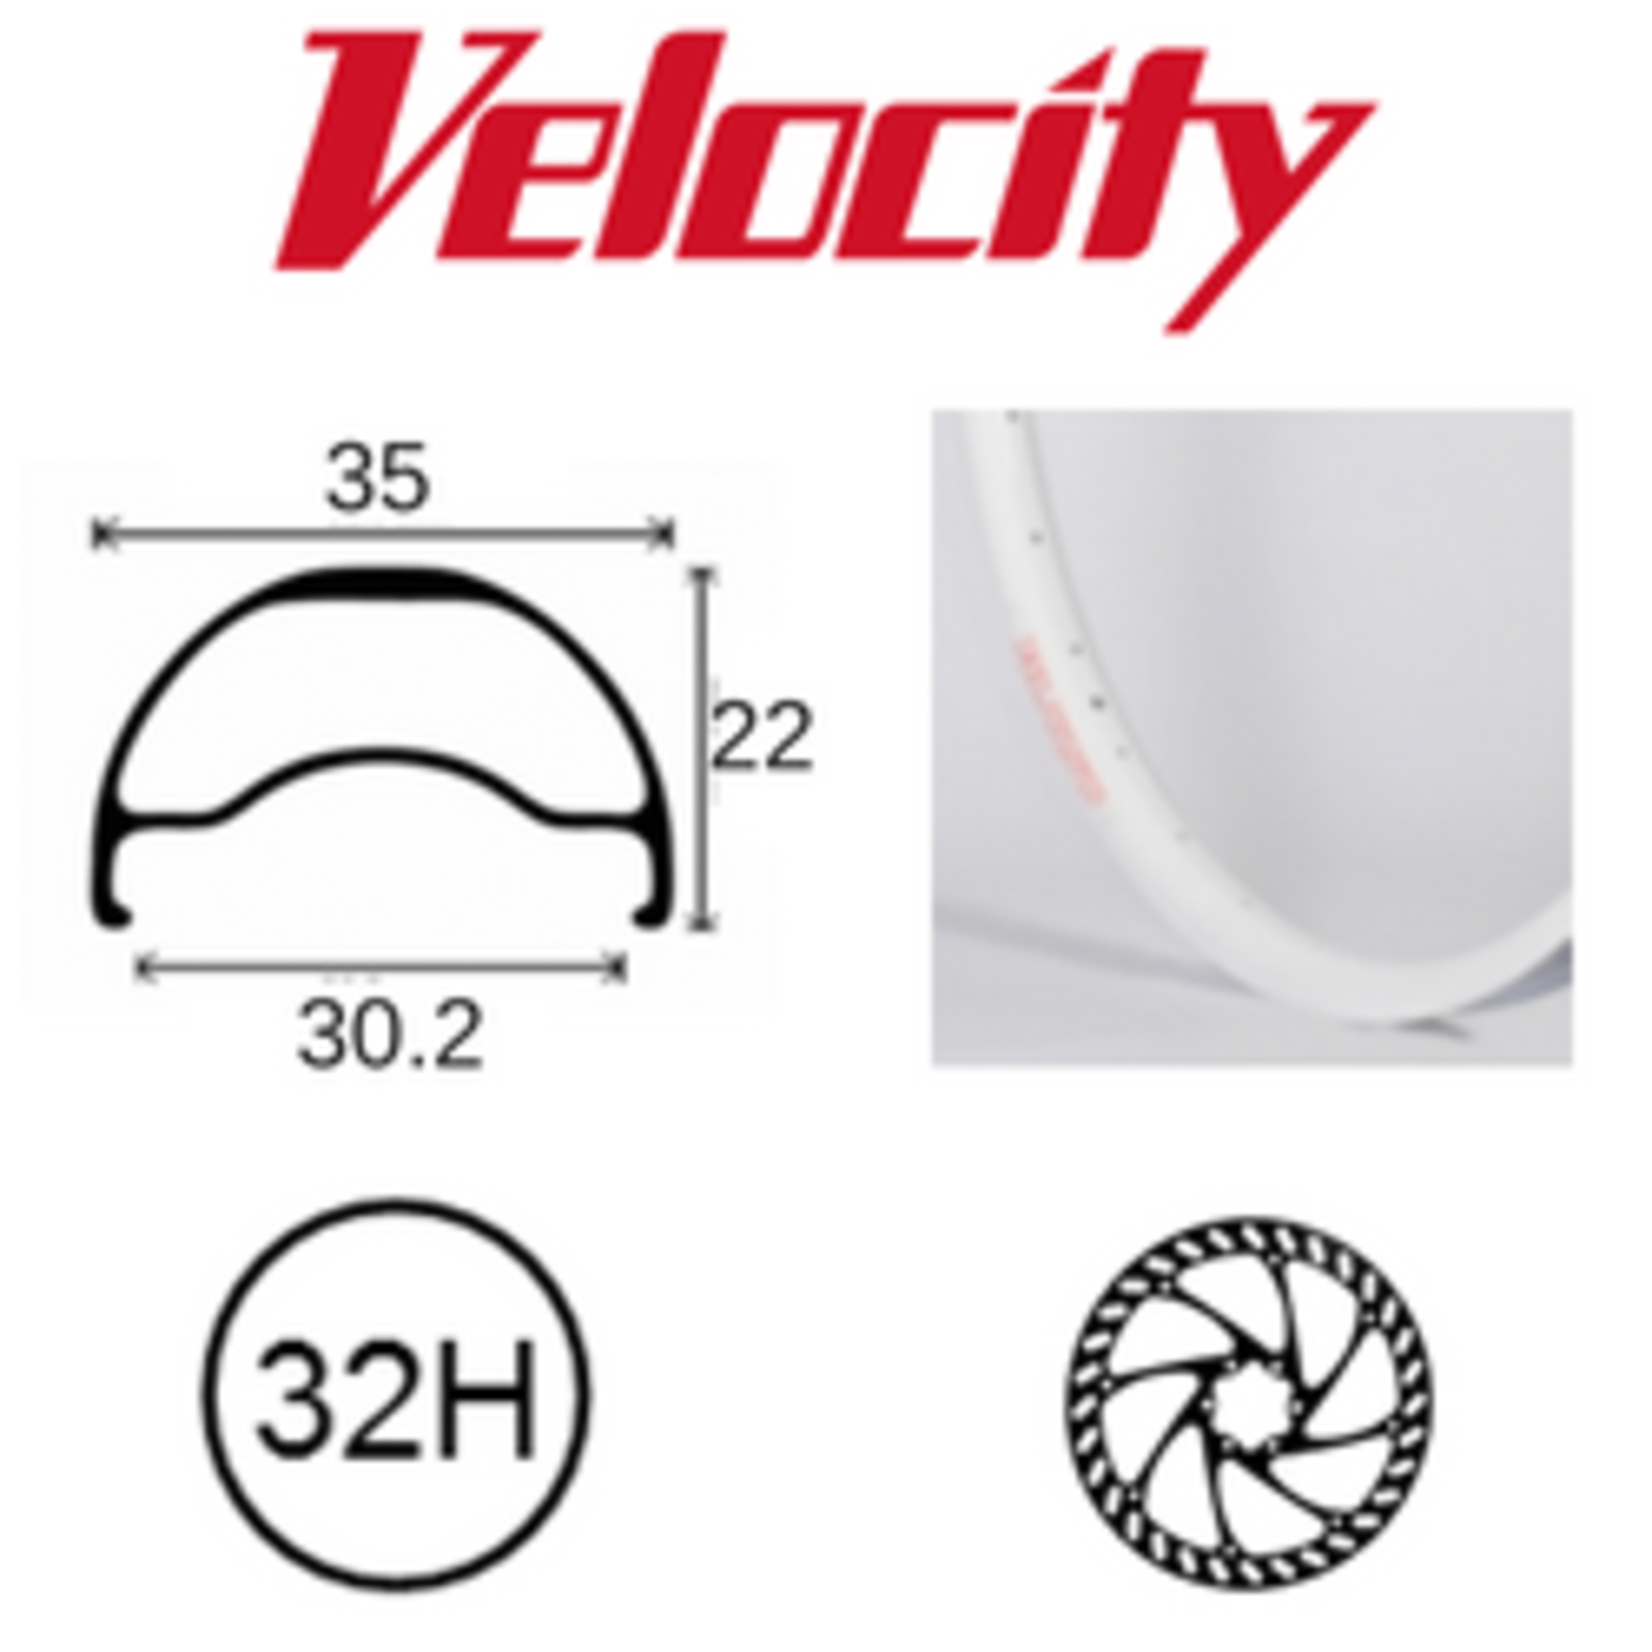 velocity Velocity Rim - Blunt 35- 700C(622) 32H - Presta Valve - Disc Brake - D/W - White